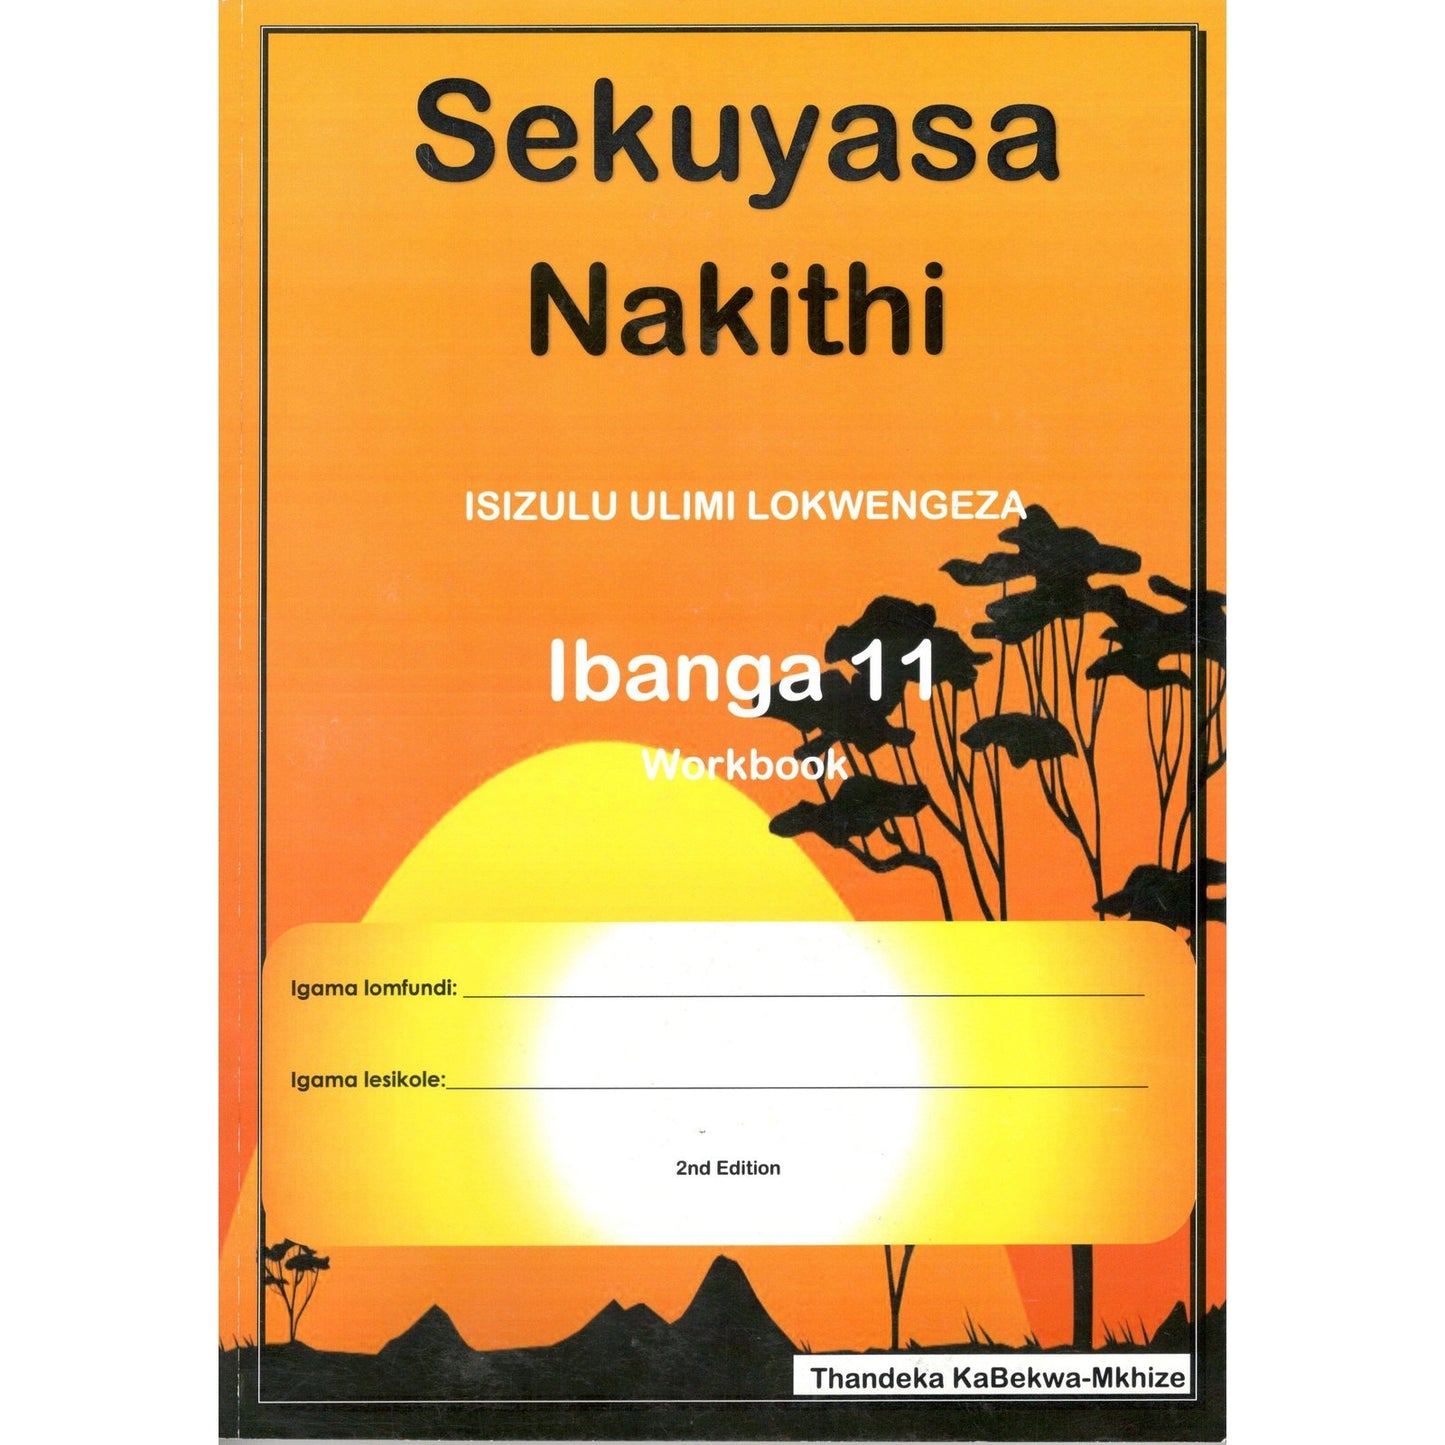 Sekuyasa Nakithi Isizulu Workbook Grade 11